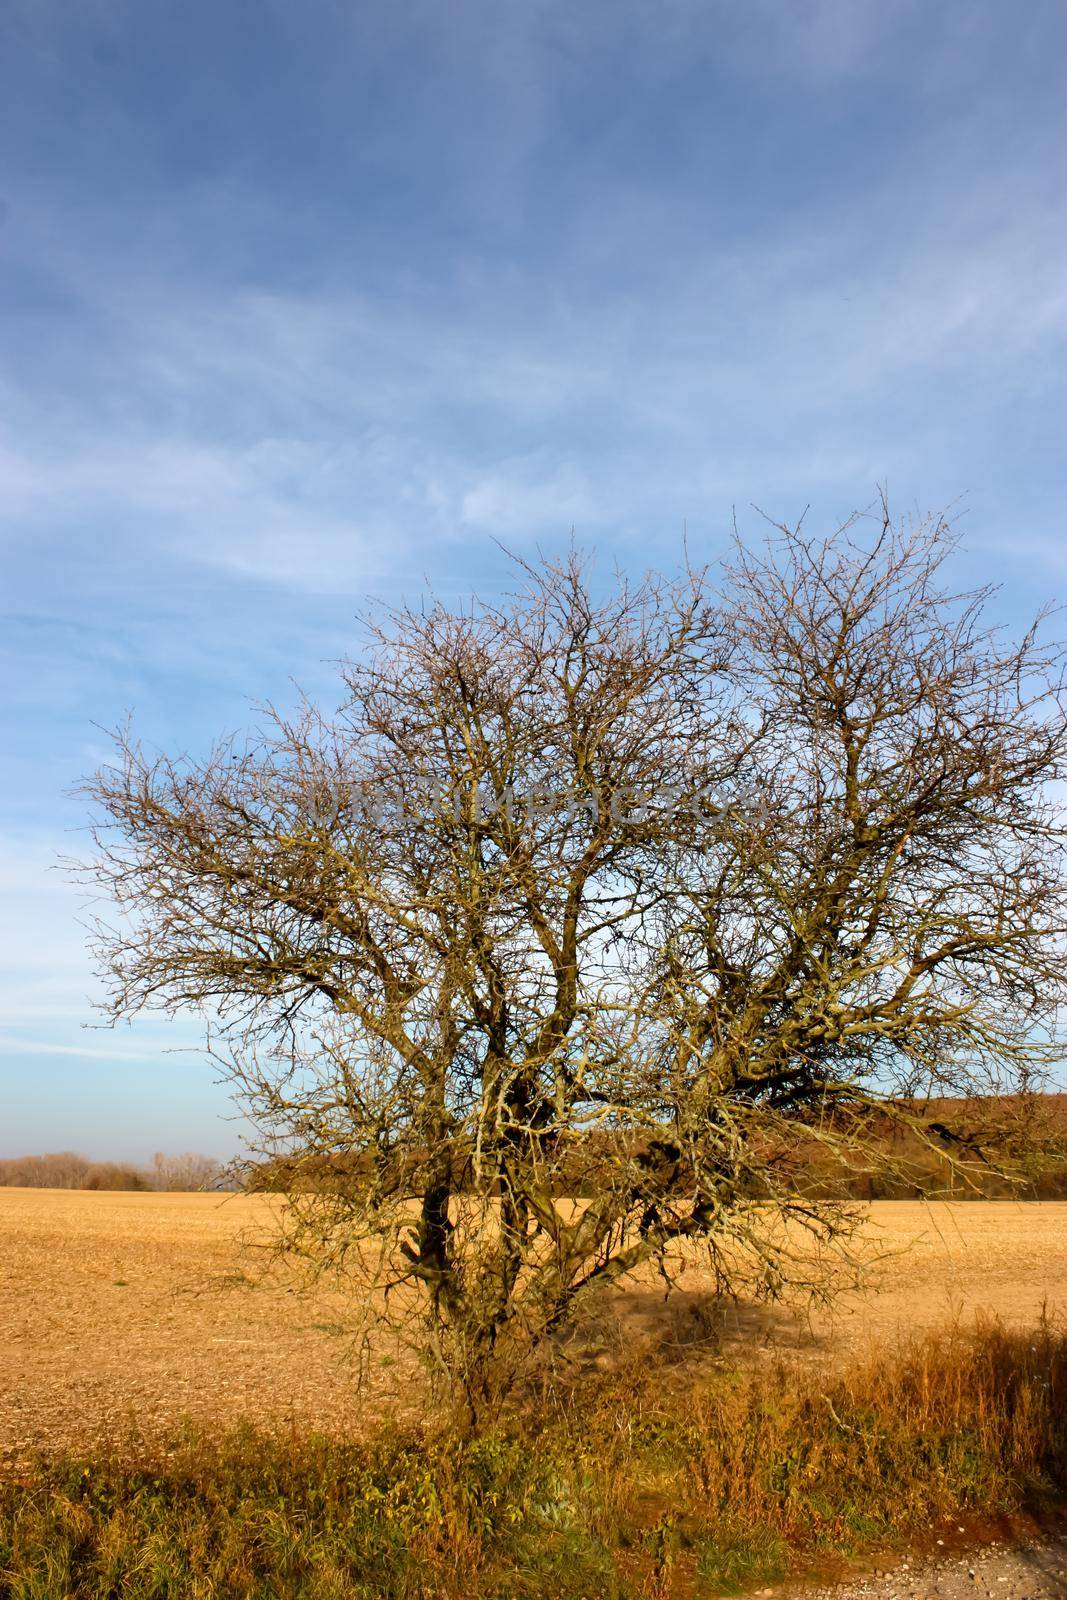 an eared tree on an empty field against a blue sky by zakob337